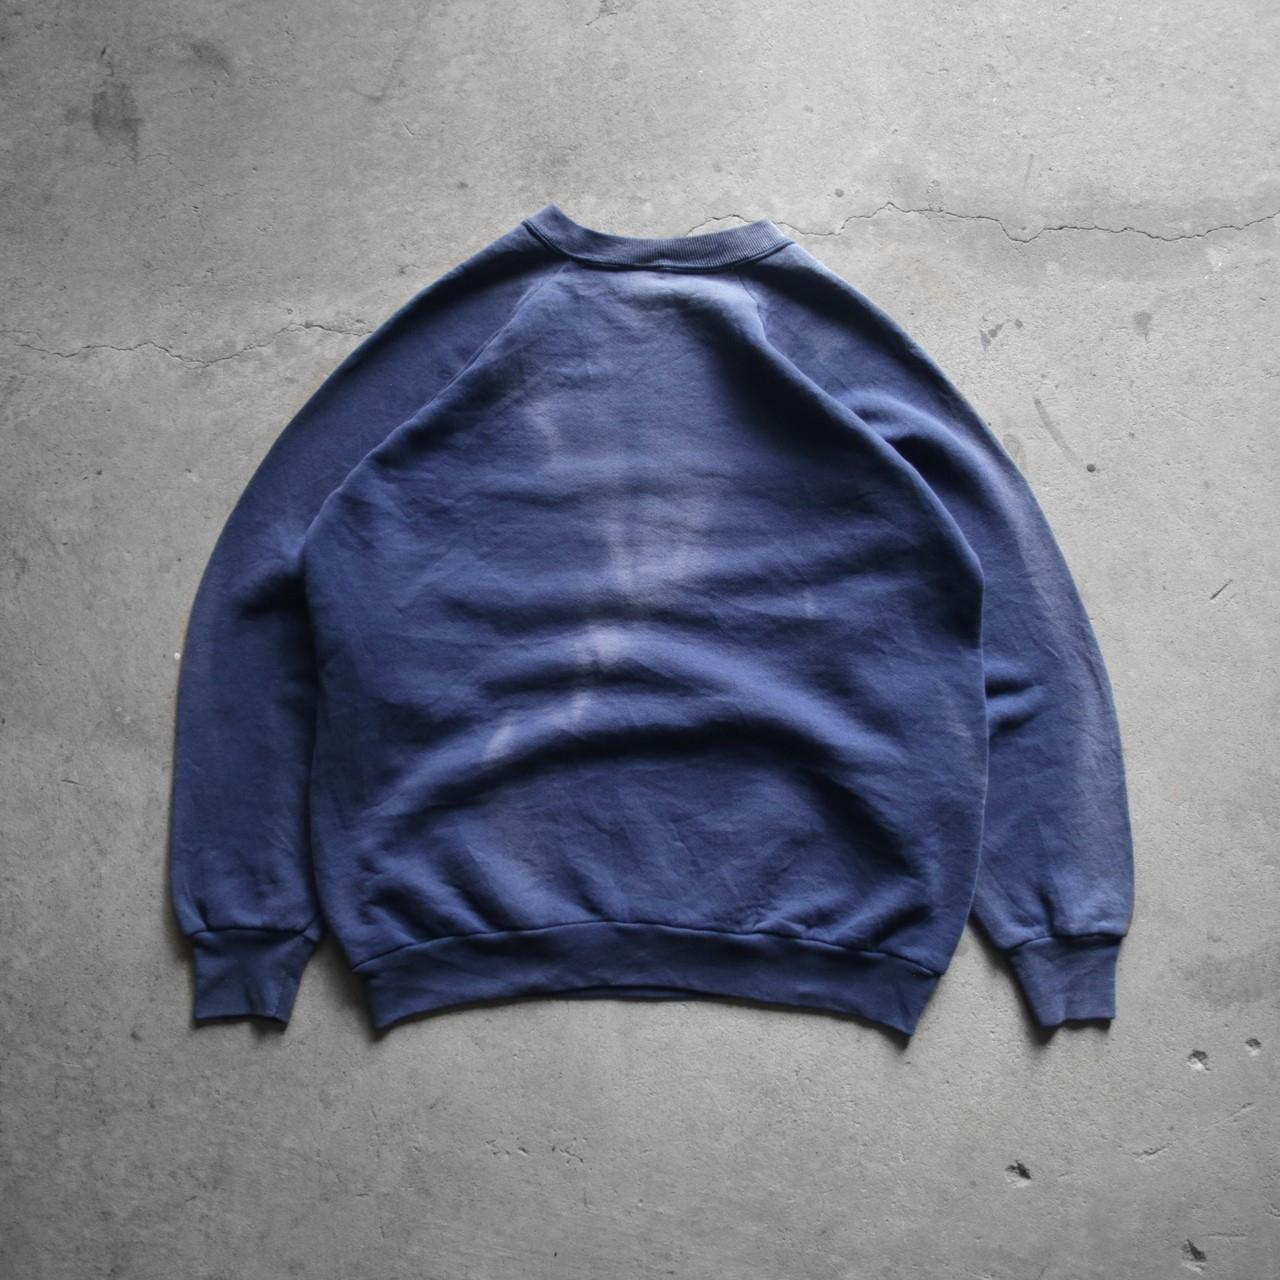 FRUIT of the LOOM Vintage Sweatshirt Sweater - 1990s... - Depop